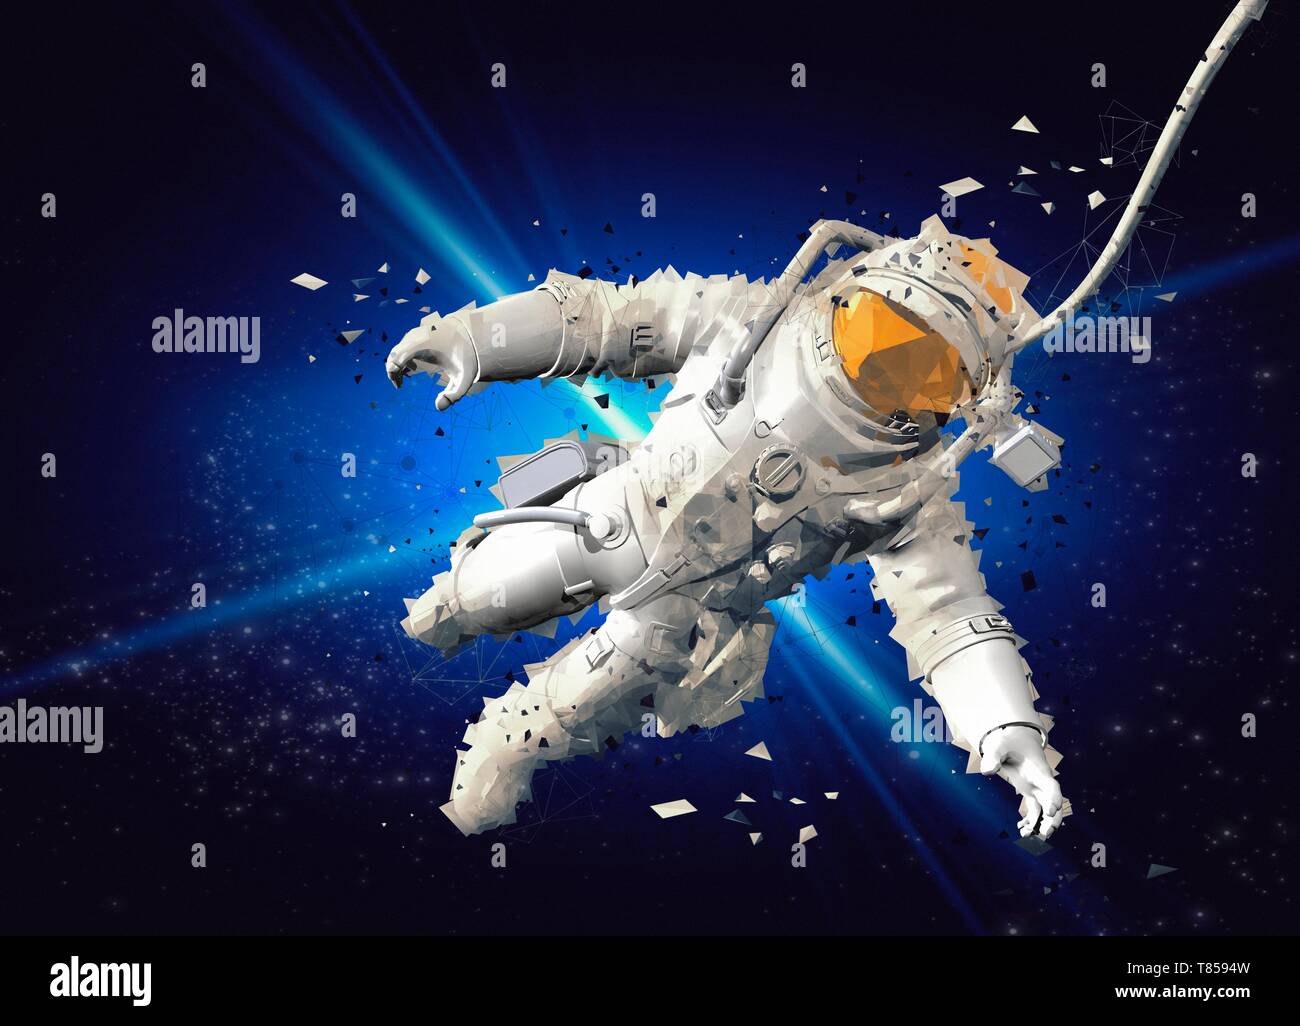 Astronaut, illustration Stock Photo